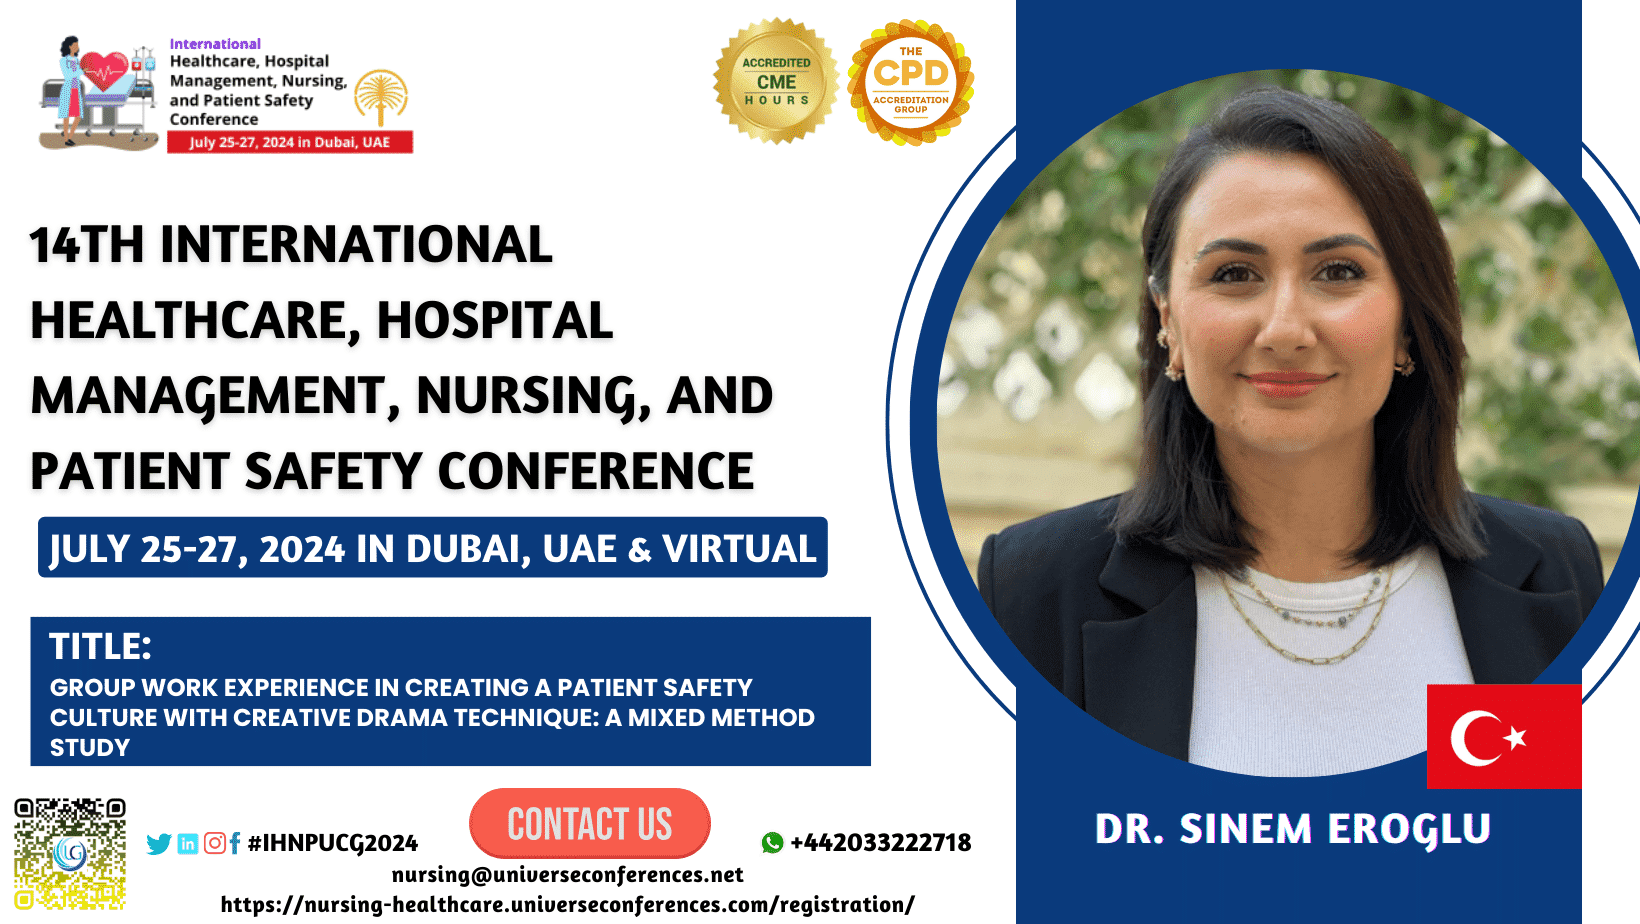 Dr. Sinem Eroglu _14th International Healthcare, Hospital Management, Nursing, and Patient Safety Conference